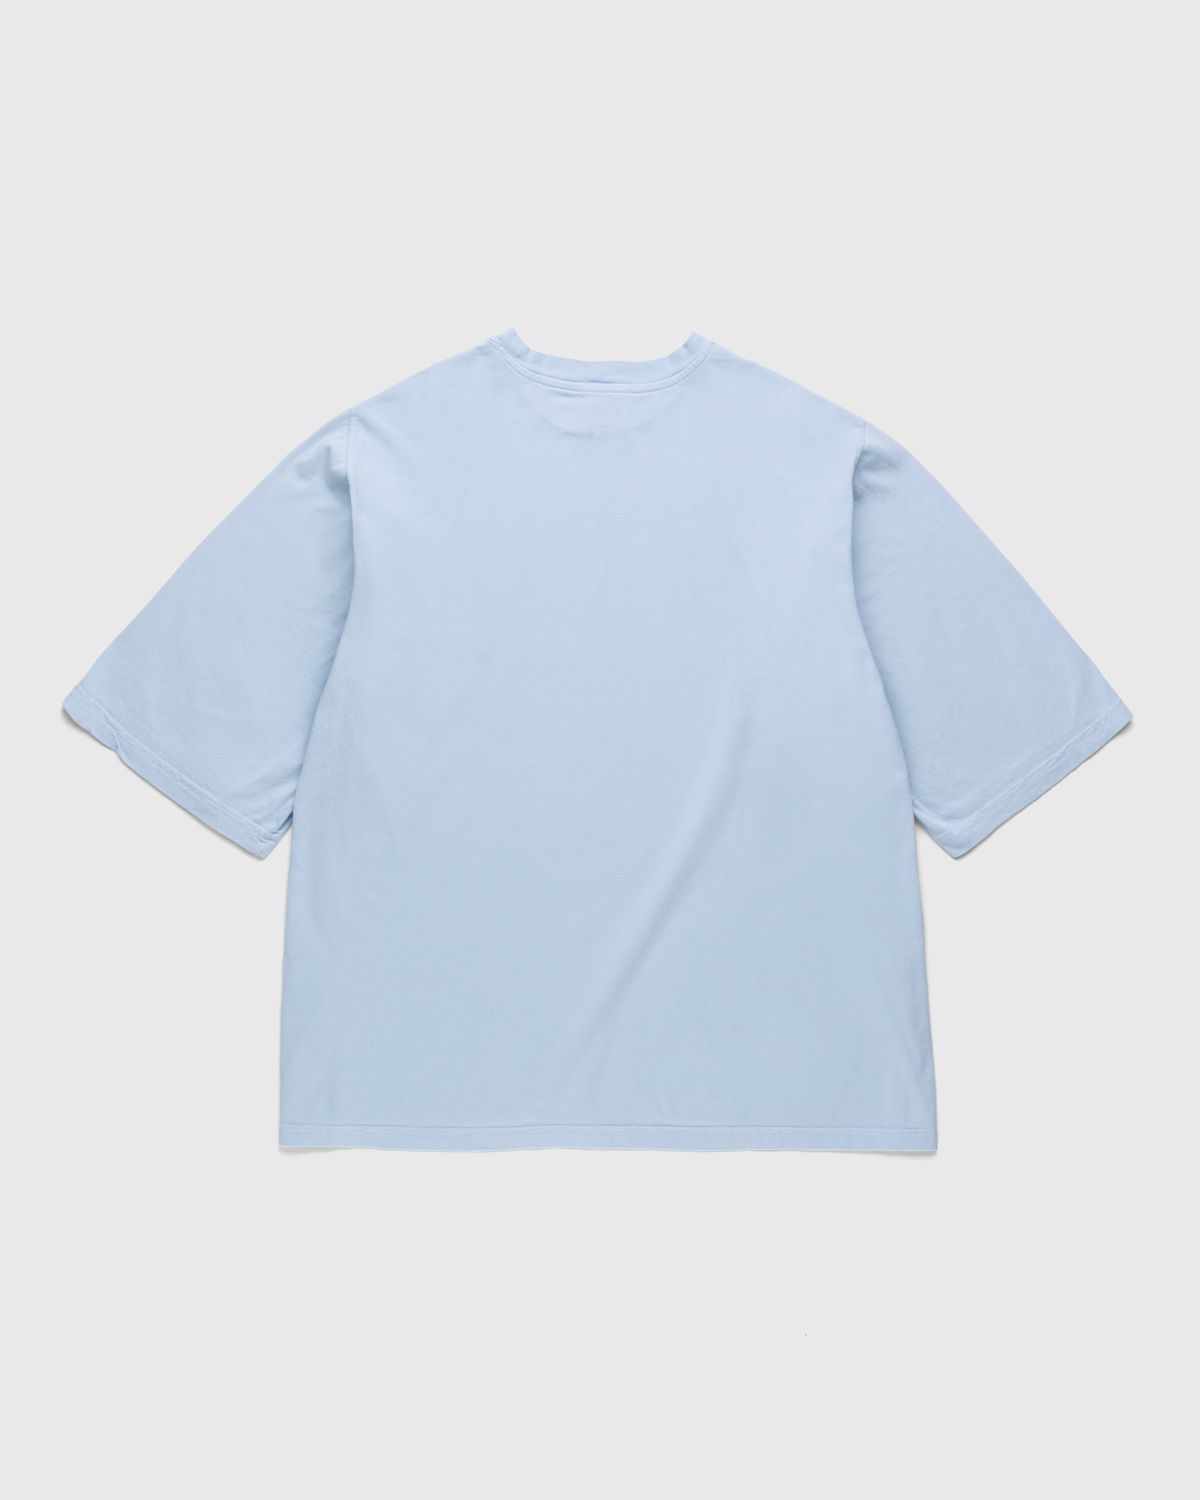 Lourdes New York – Complaint Dept. Tee Tinto Capo Light Blue Cerchio - T-Shirts - Blue - Image 2